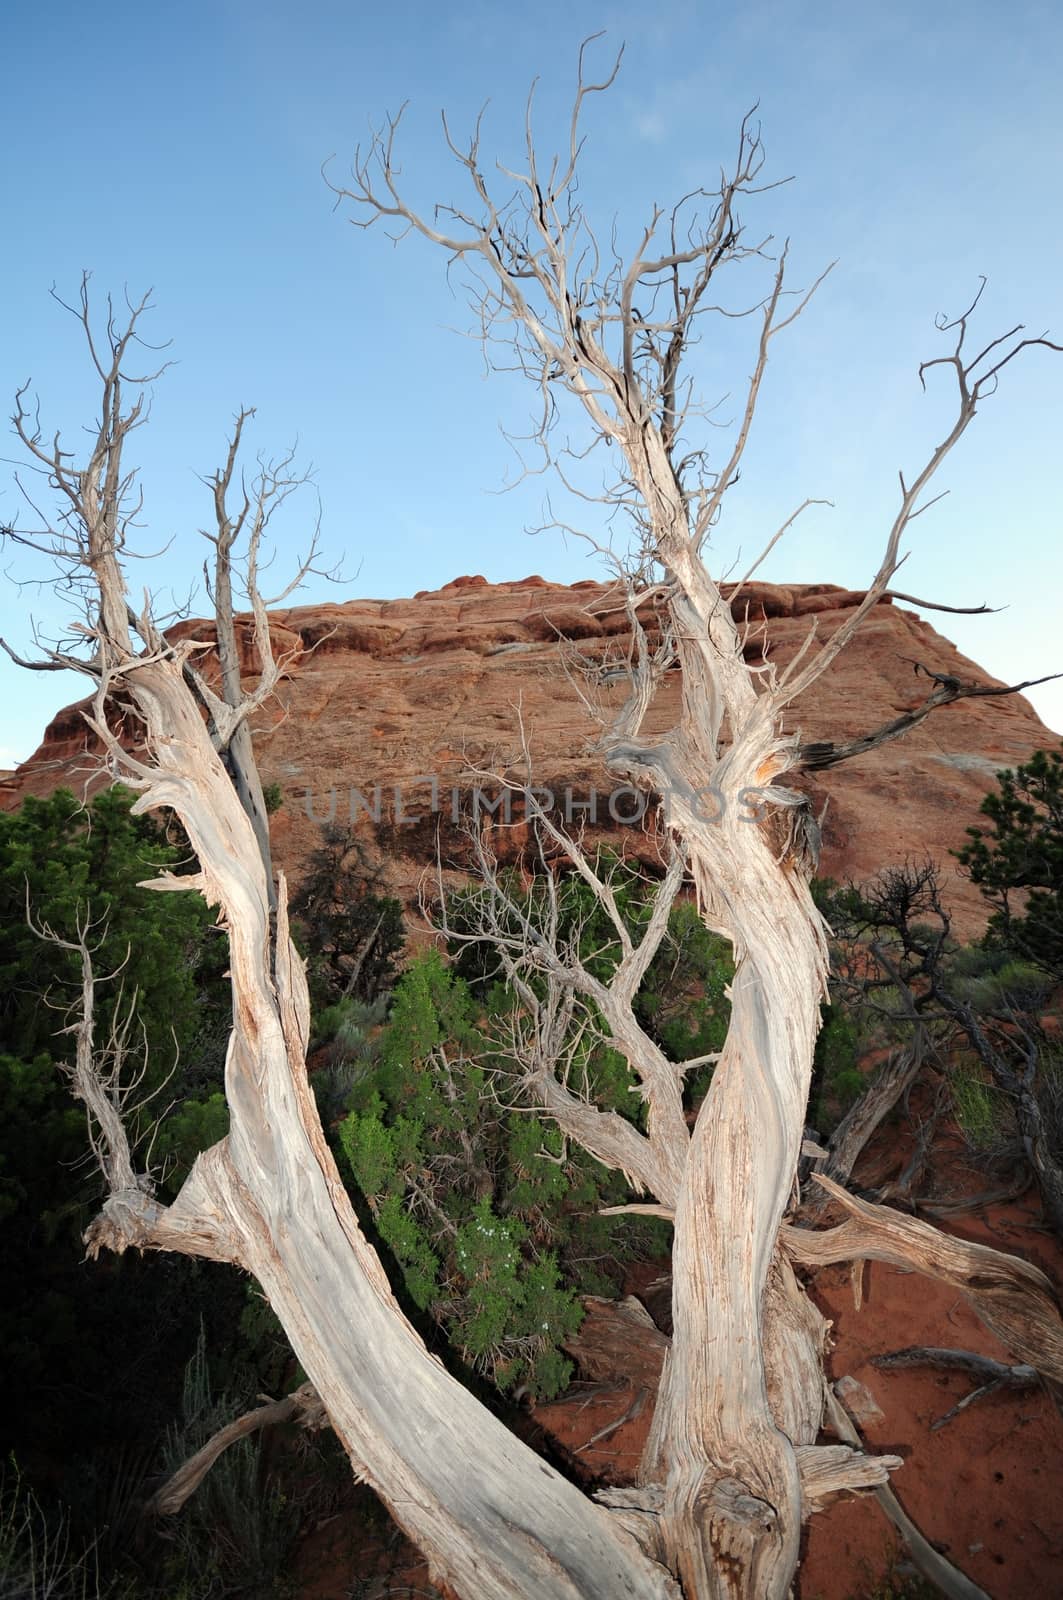 Utah Dead Tree by welcomia